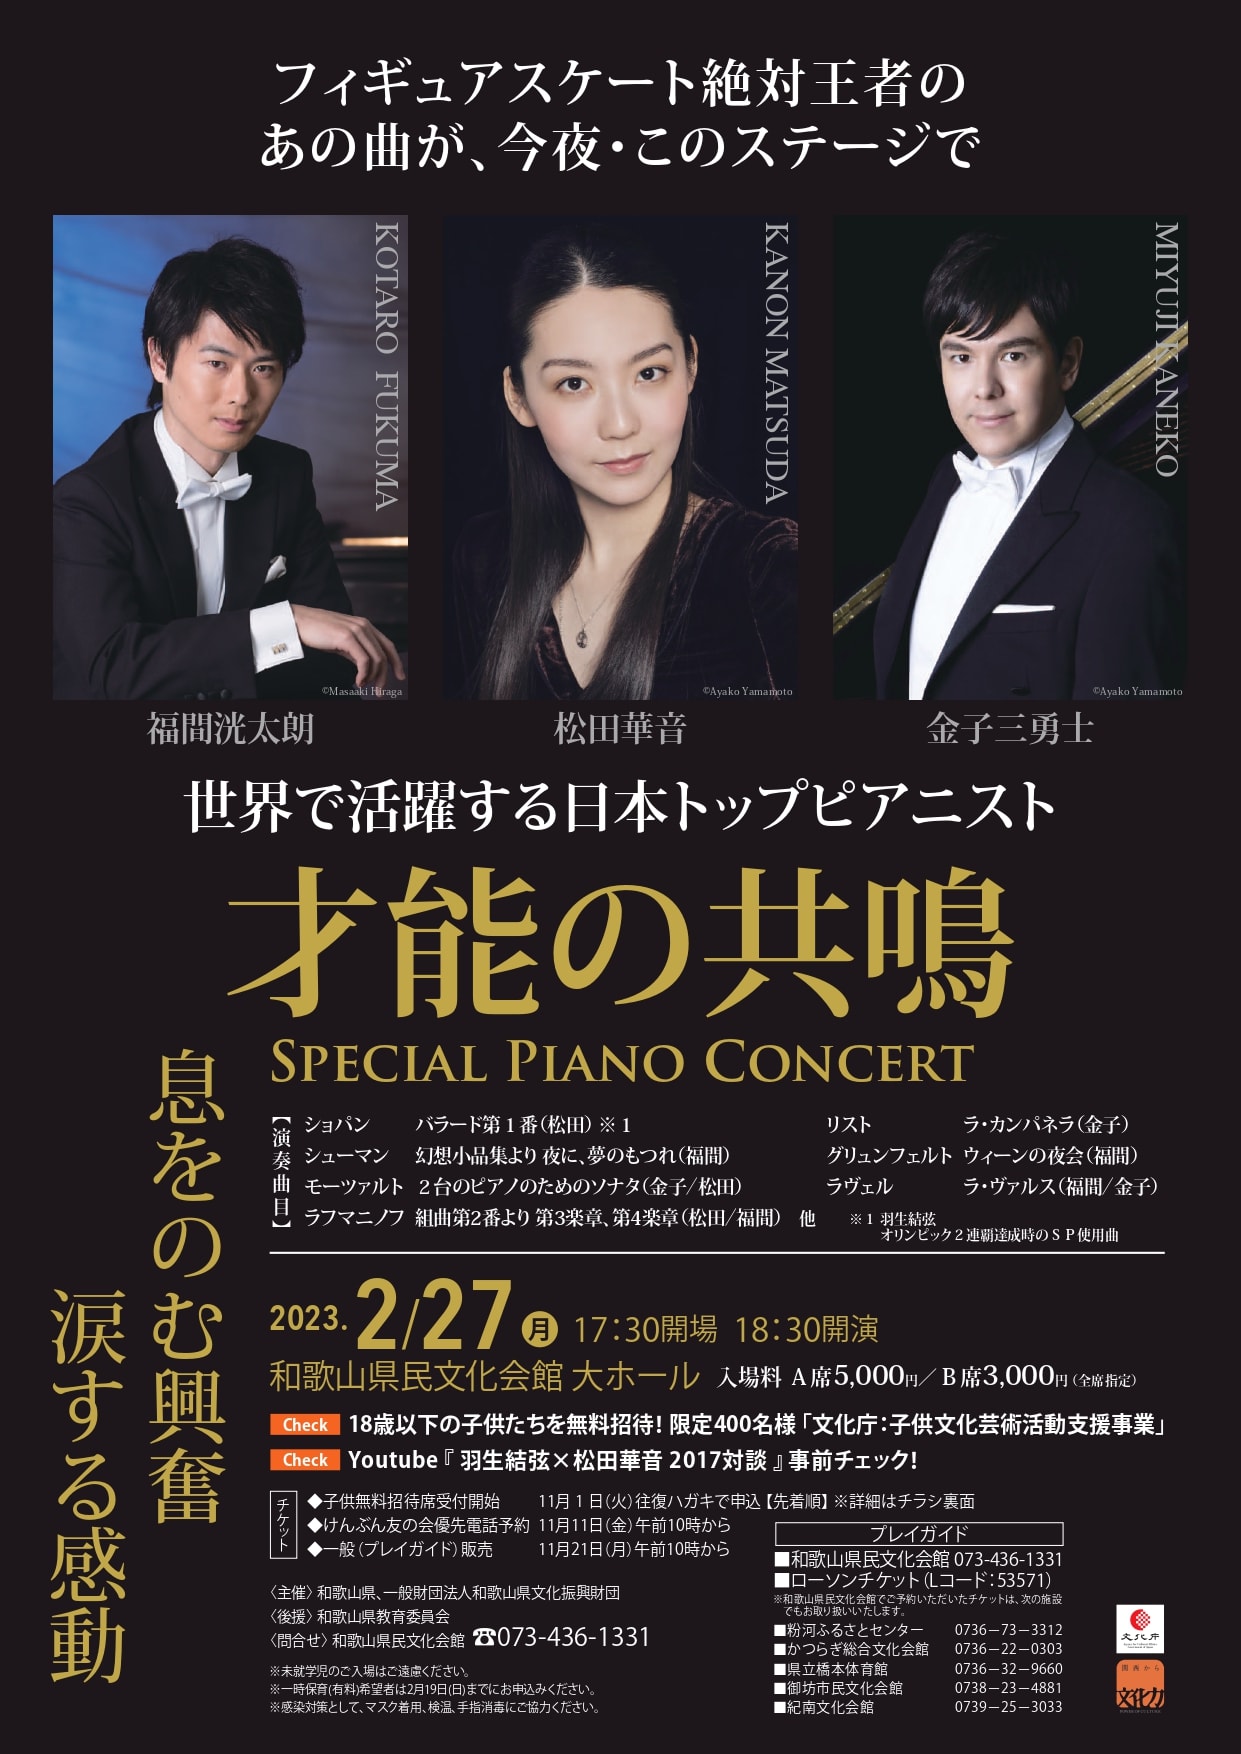 世界で活躍する日本トップピアニスト 『才能の共鳴』スペシャル ピアノ